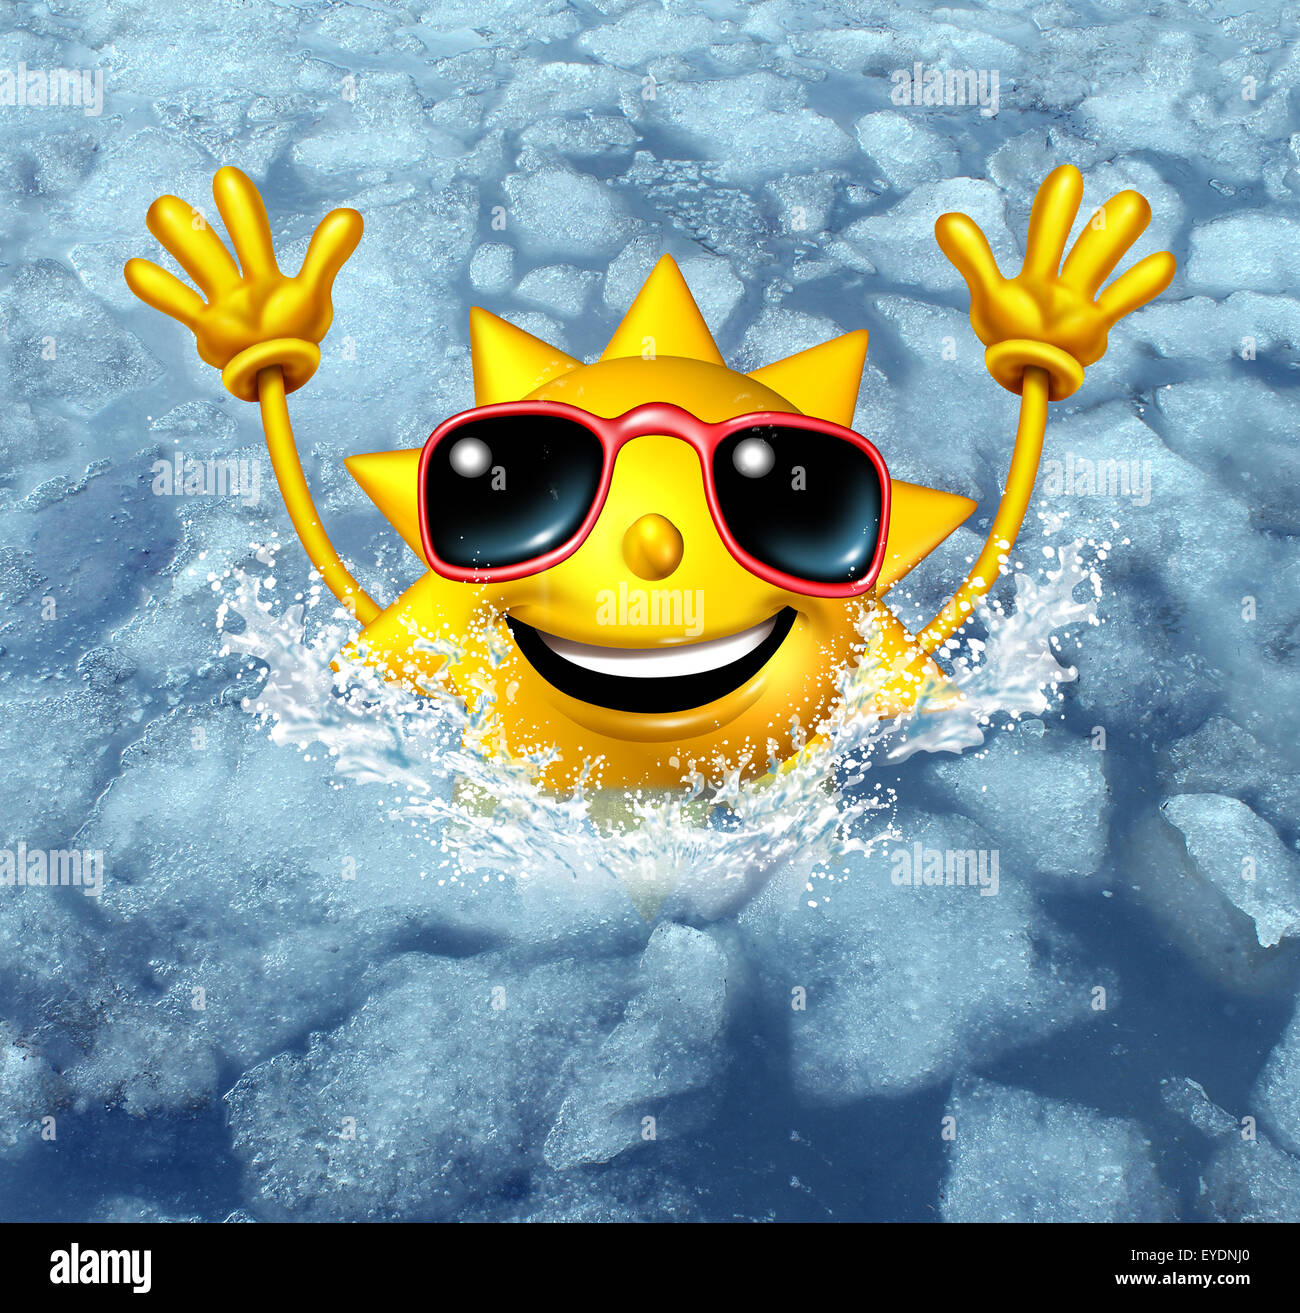 Coooling divertenti e raffreddare i concept come un felice caldo sole immersioni di carattere in ghiaccio congelato acqua come un simbolo per la gestione del tempo caldo caldo estivo rinfrescante e break da una ondata di caldo. Foto Stock